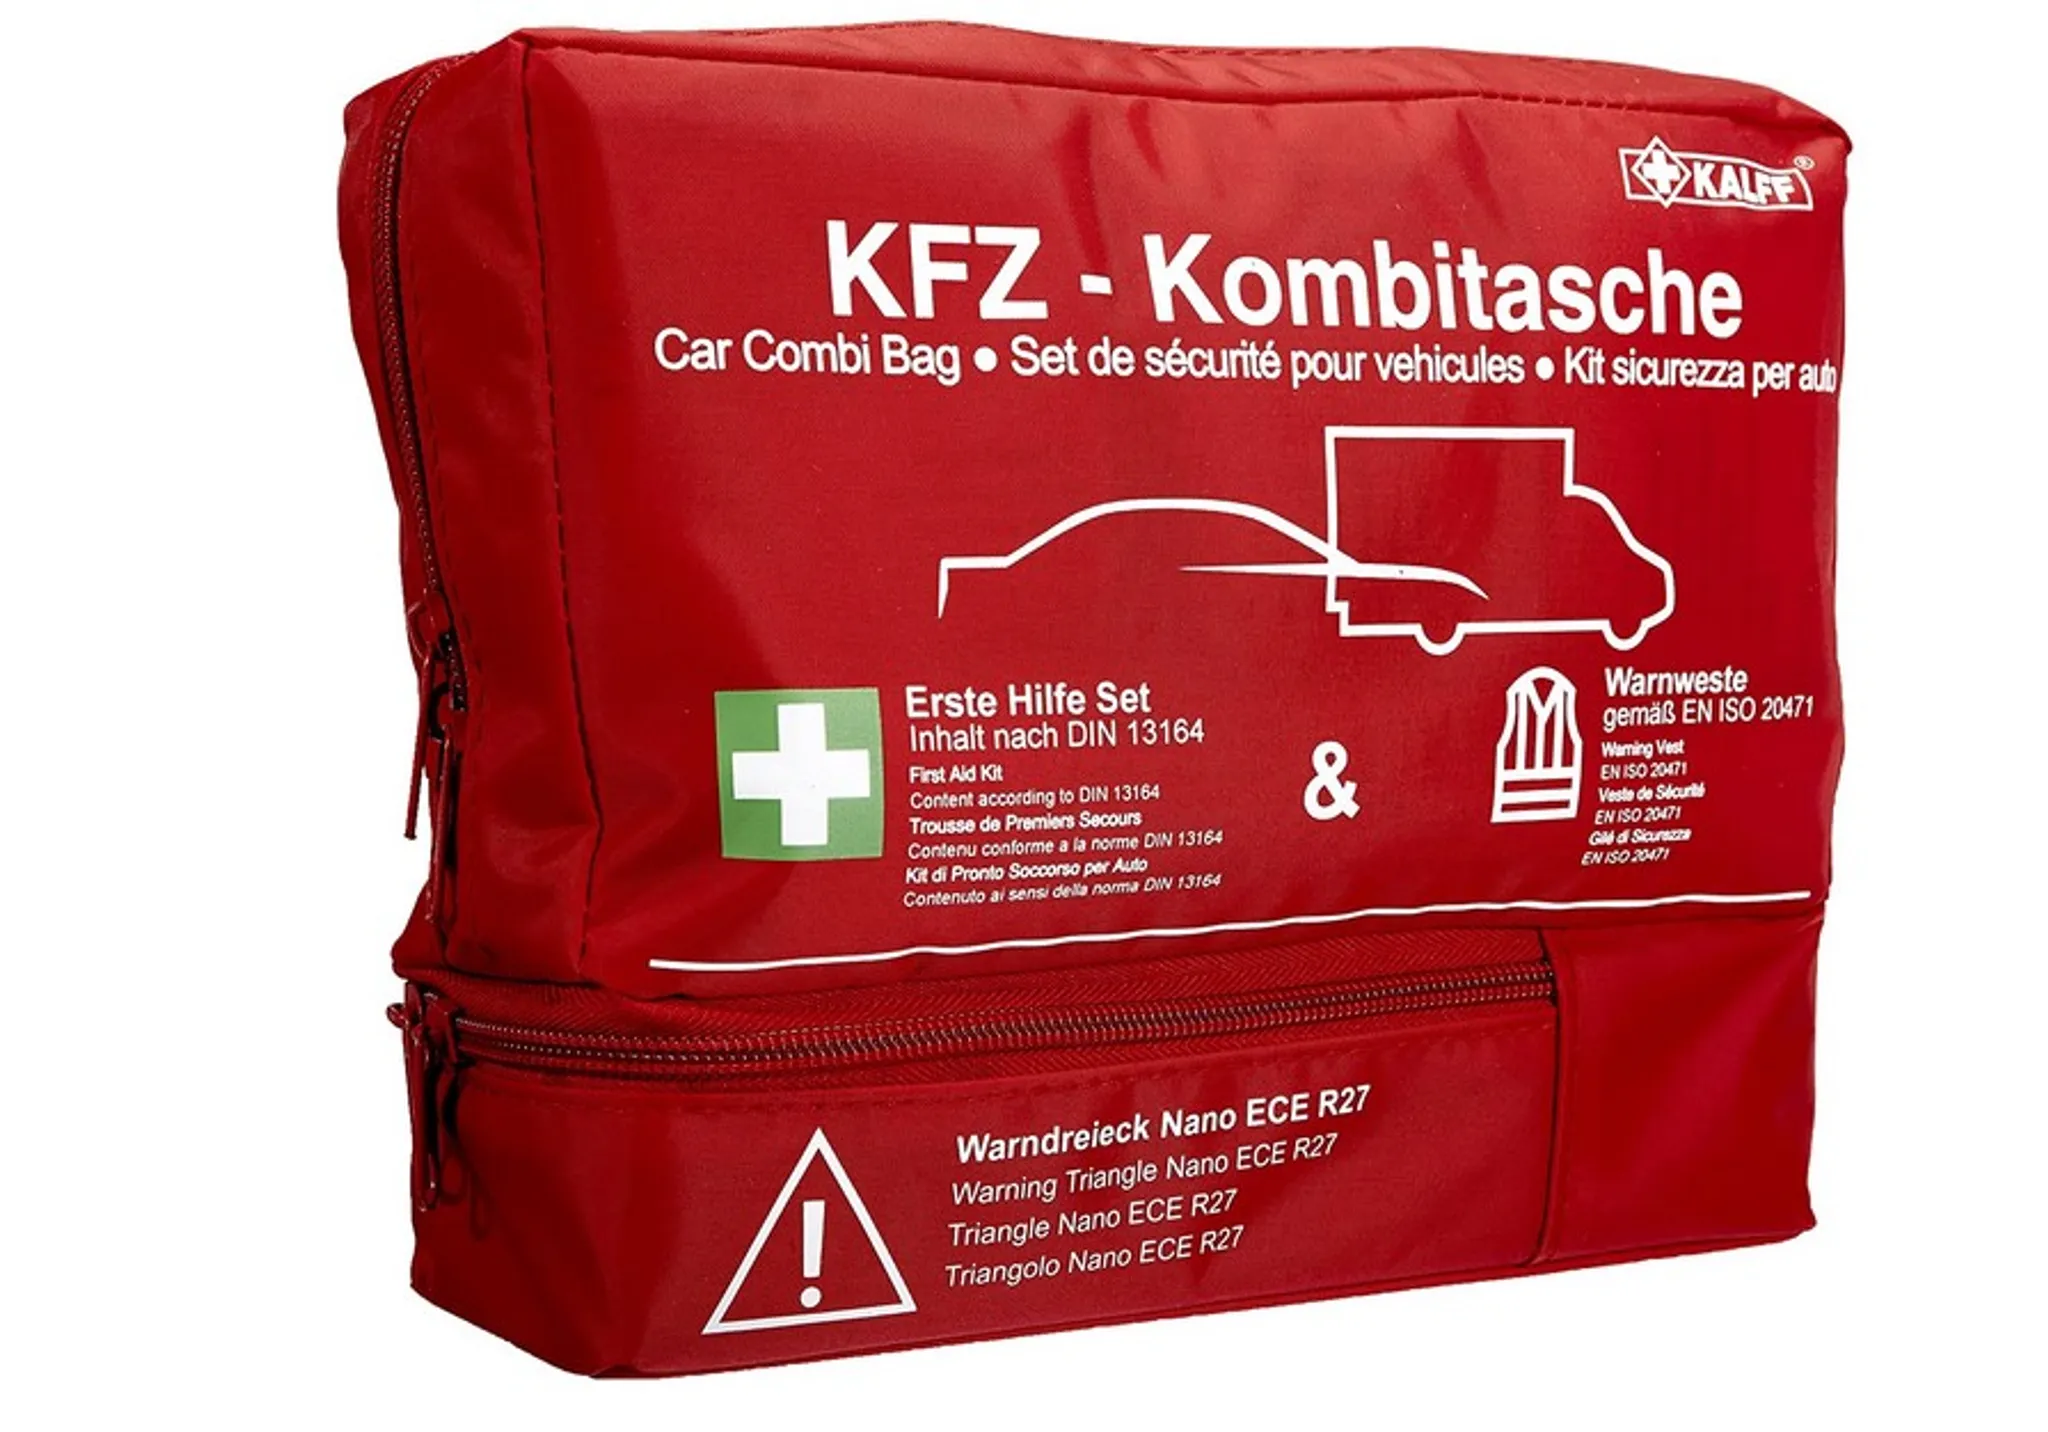 Kfz-Set Warnweste im Beutel  Allflash Produktions + Vertriebs GmbH